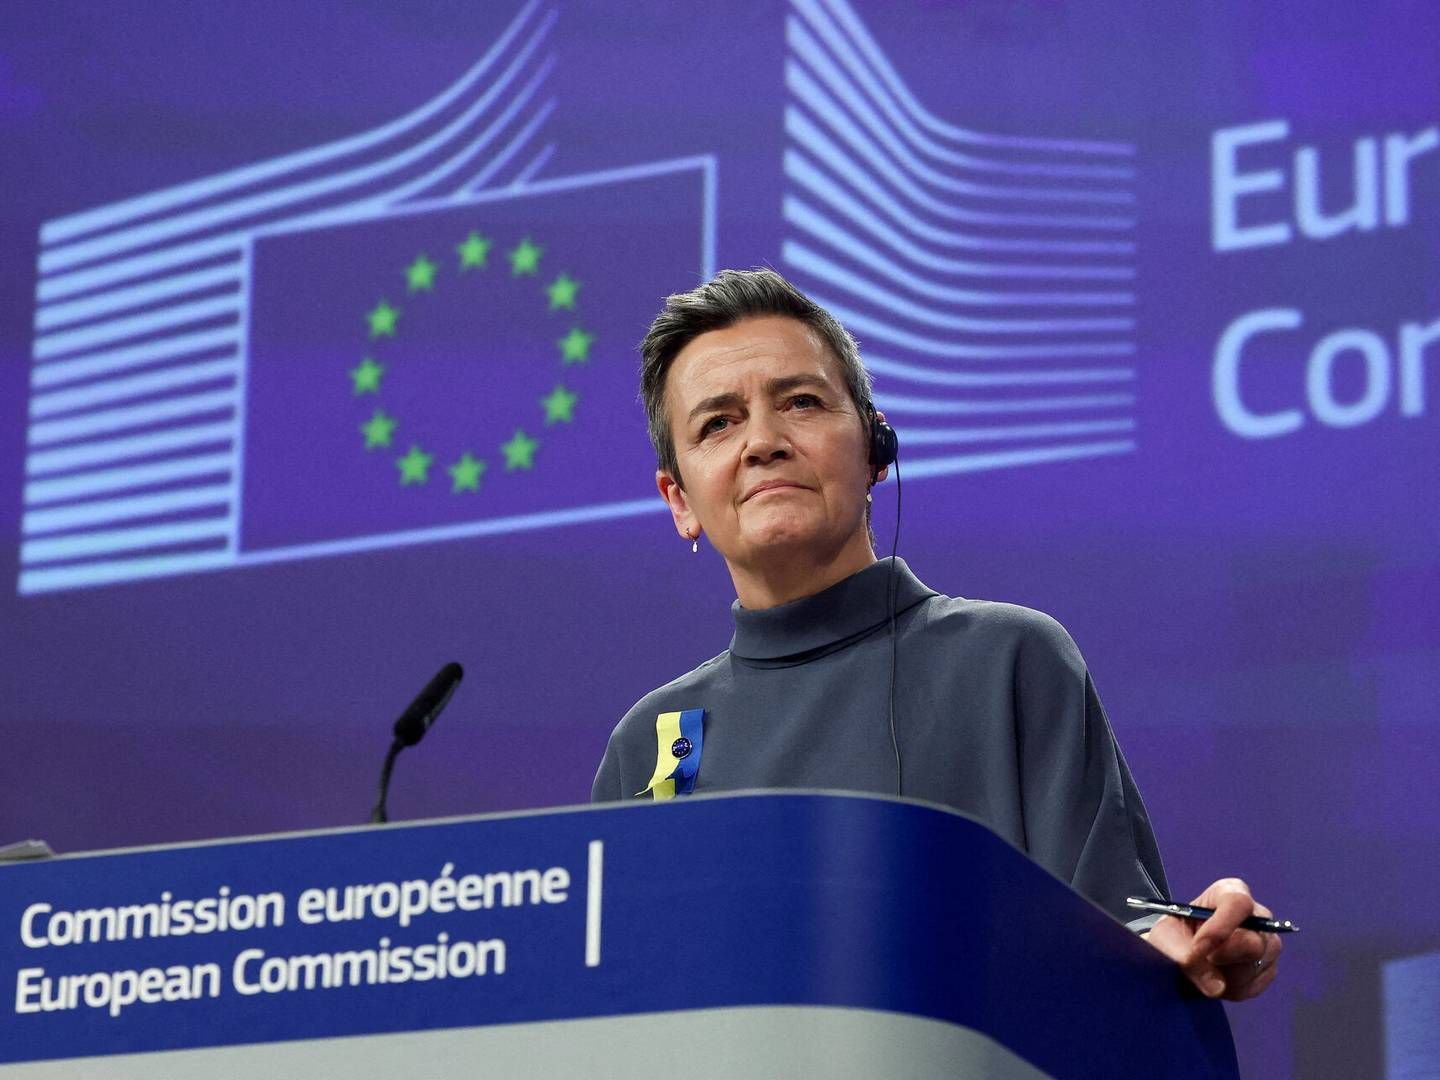 "Vi er kommet meget tættere på forretningsmodellen hos de virksomheder, som især er i søgelyset,” siger Margrethe Vestager, om ny EU-lov. | Photo: Yves Herman/Reuters/Ritzau Scanpix